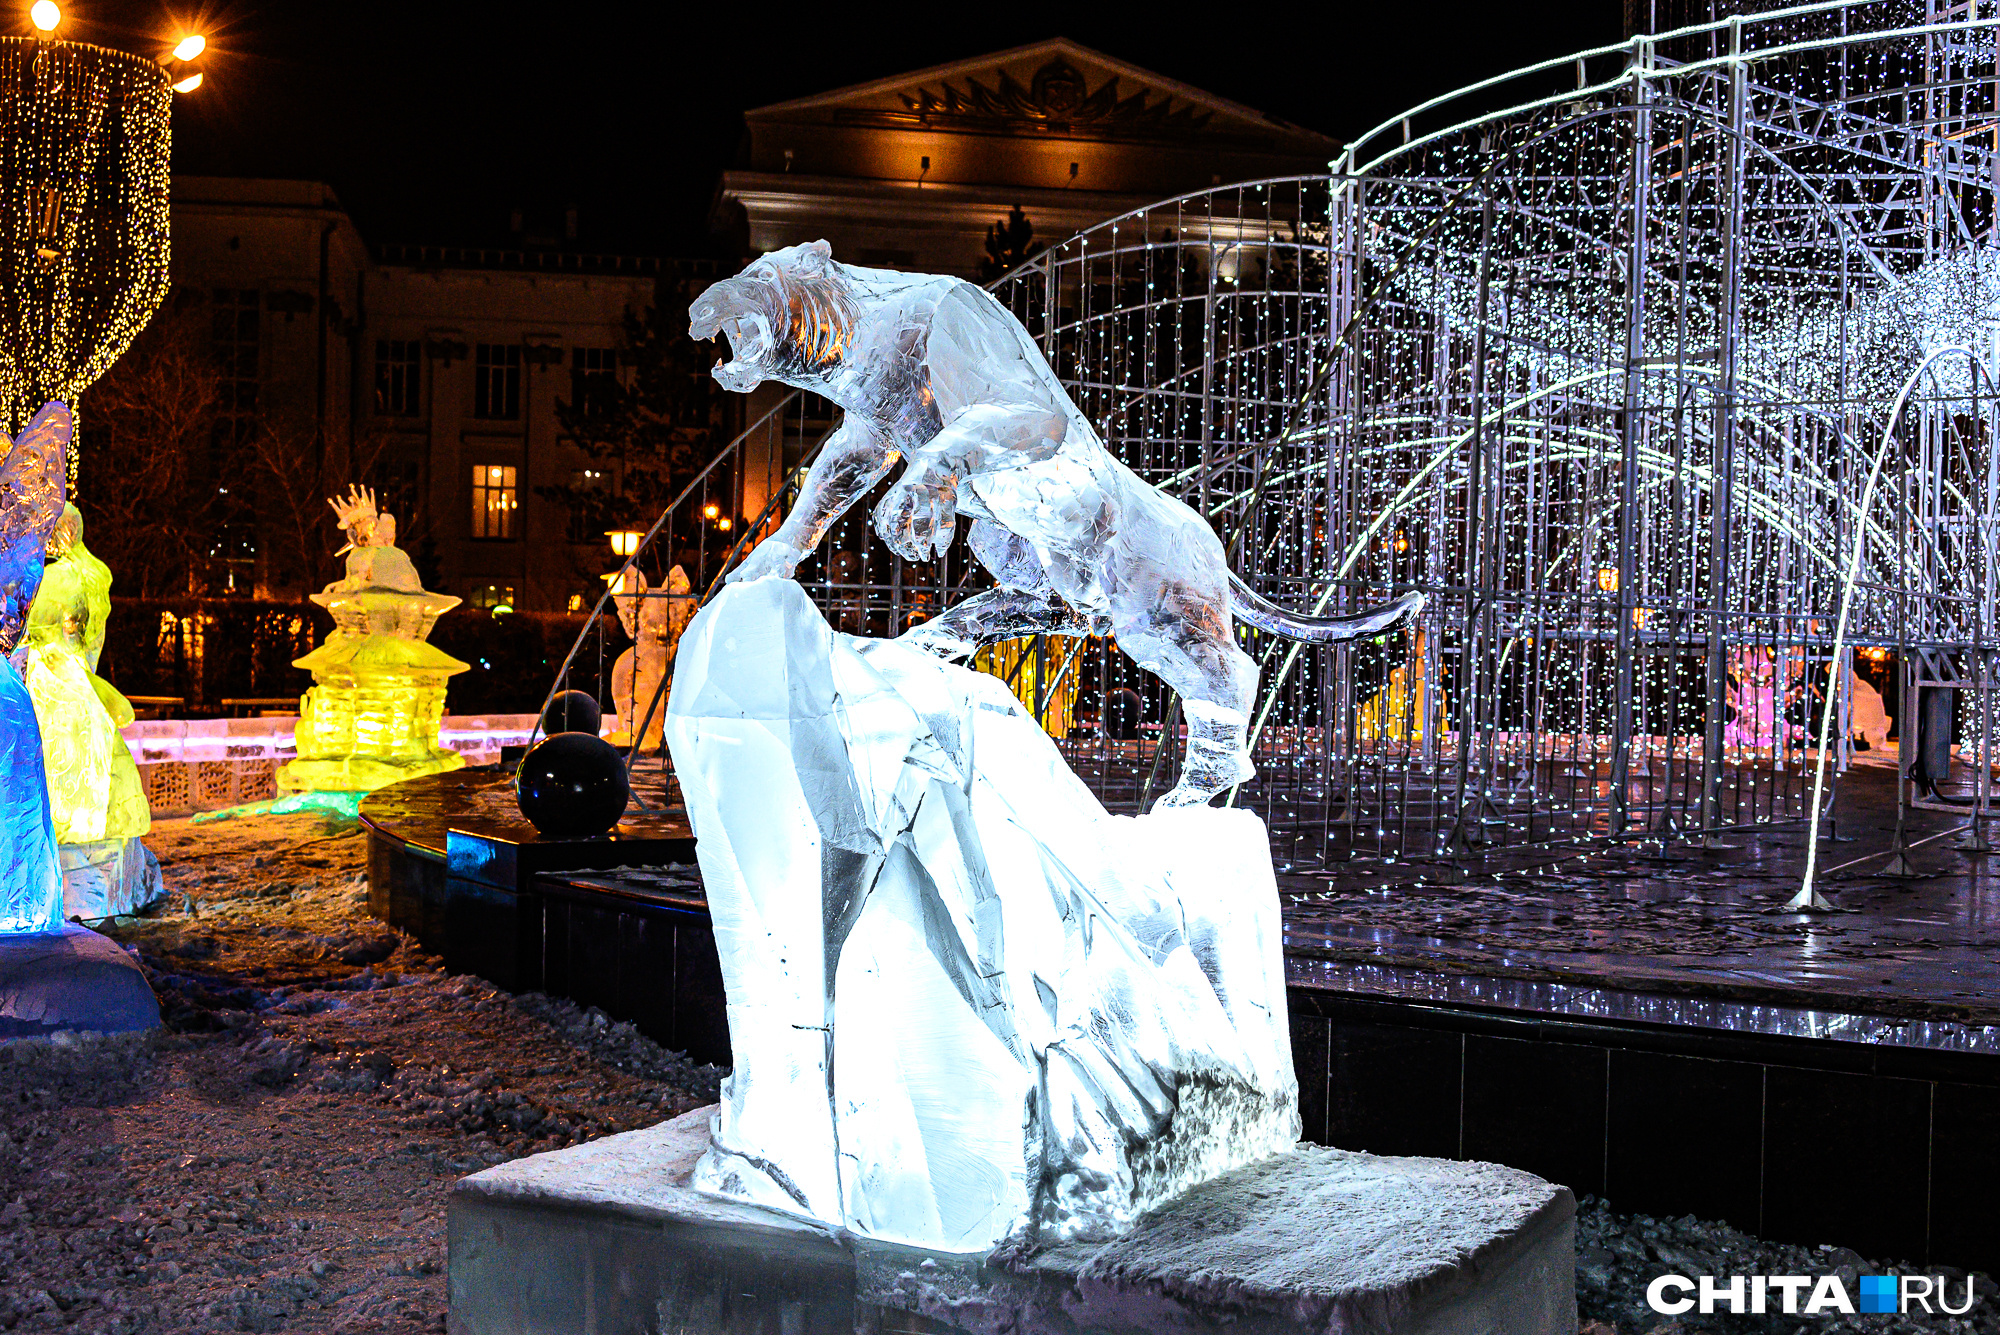 Власти Читы отменили традиционный конкурс ледяных скульптур в 2022 г.